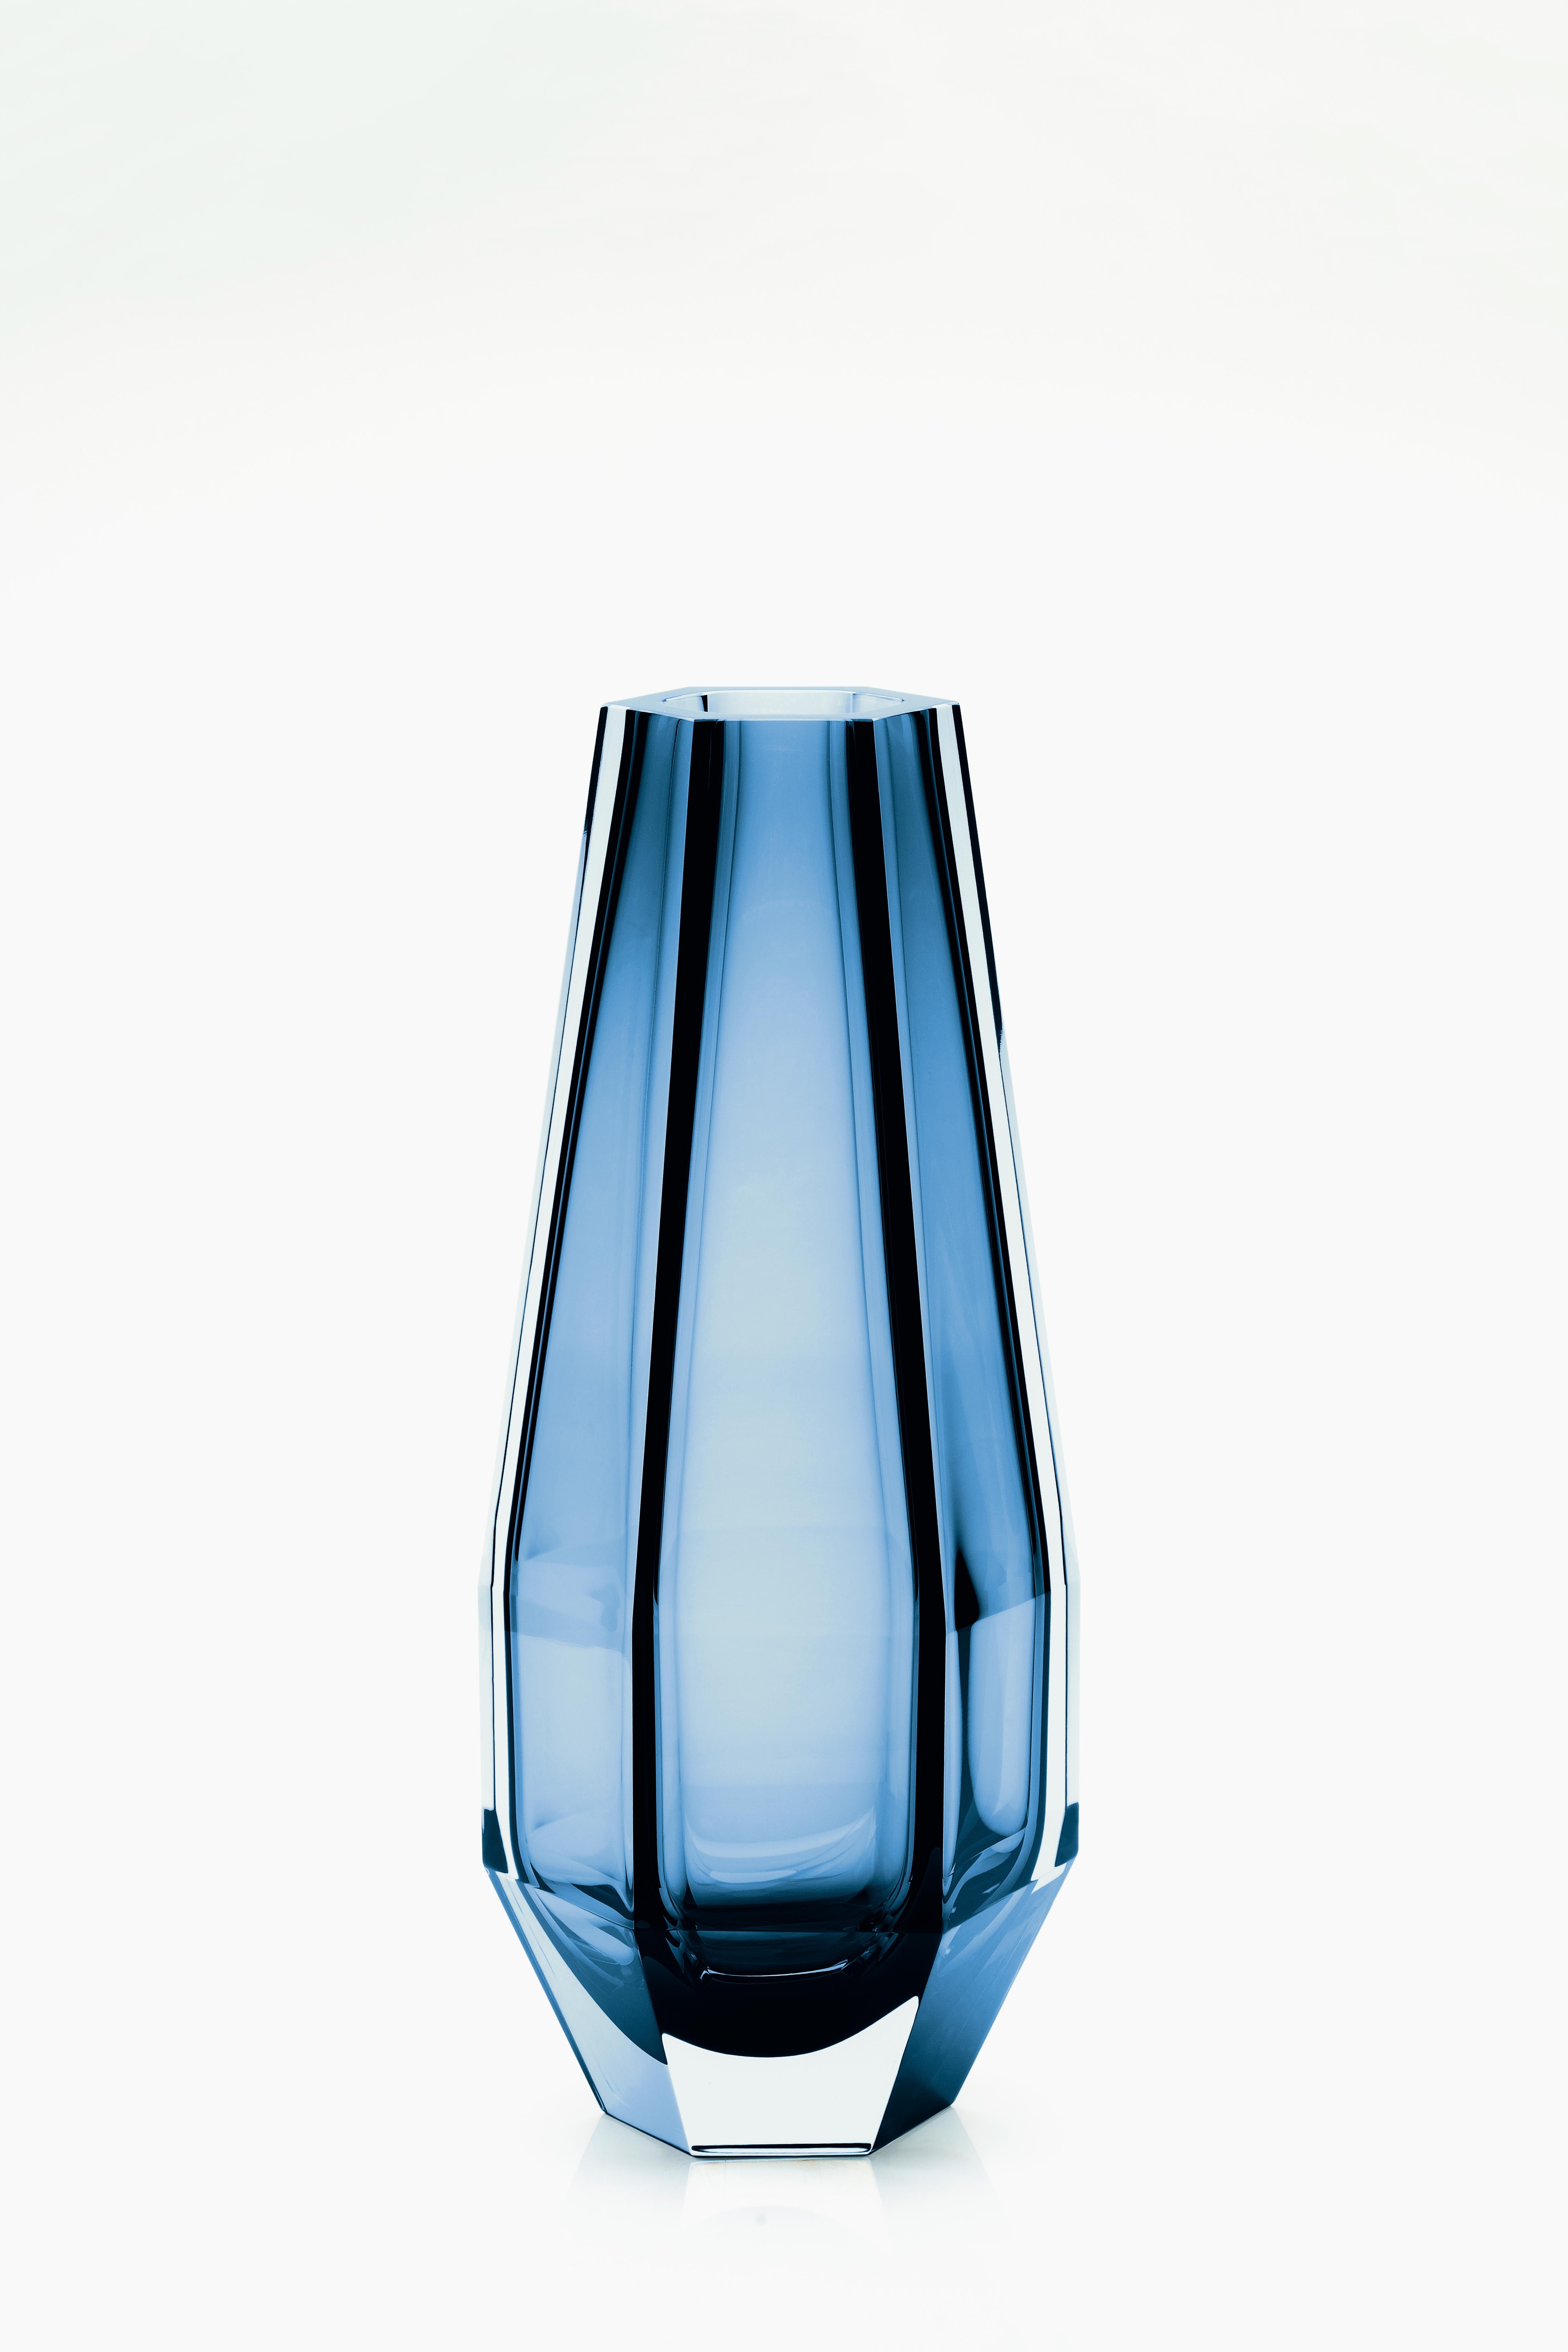 21e siècle Alessandro Mendini, vase transparent GEMELLA, verre de Murano.
Purho poursuit sa recherche de produits aux formes complémentaires avec la paire de vases Gemello et Gemella conçus par Alessandro Mendini. Partageant le même concept de